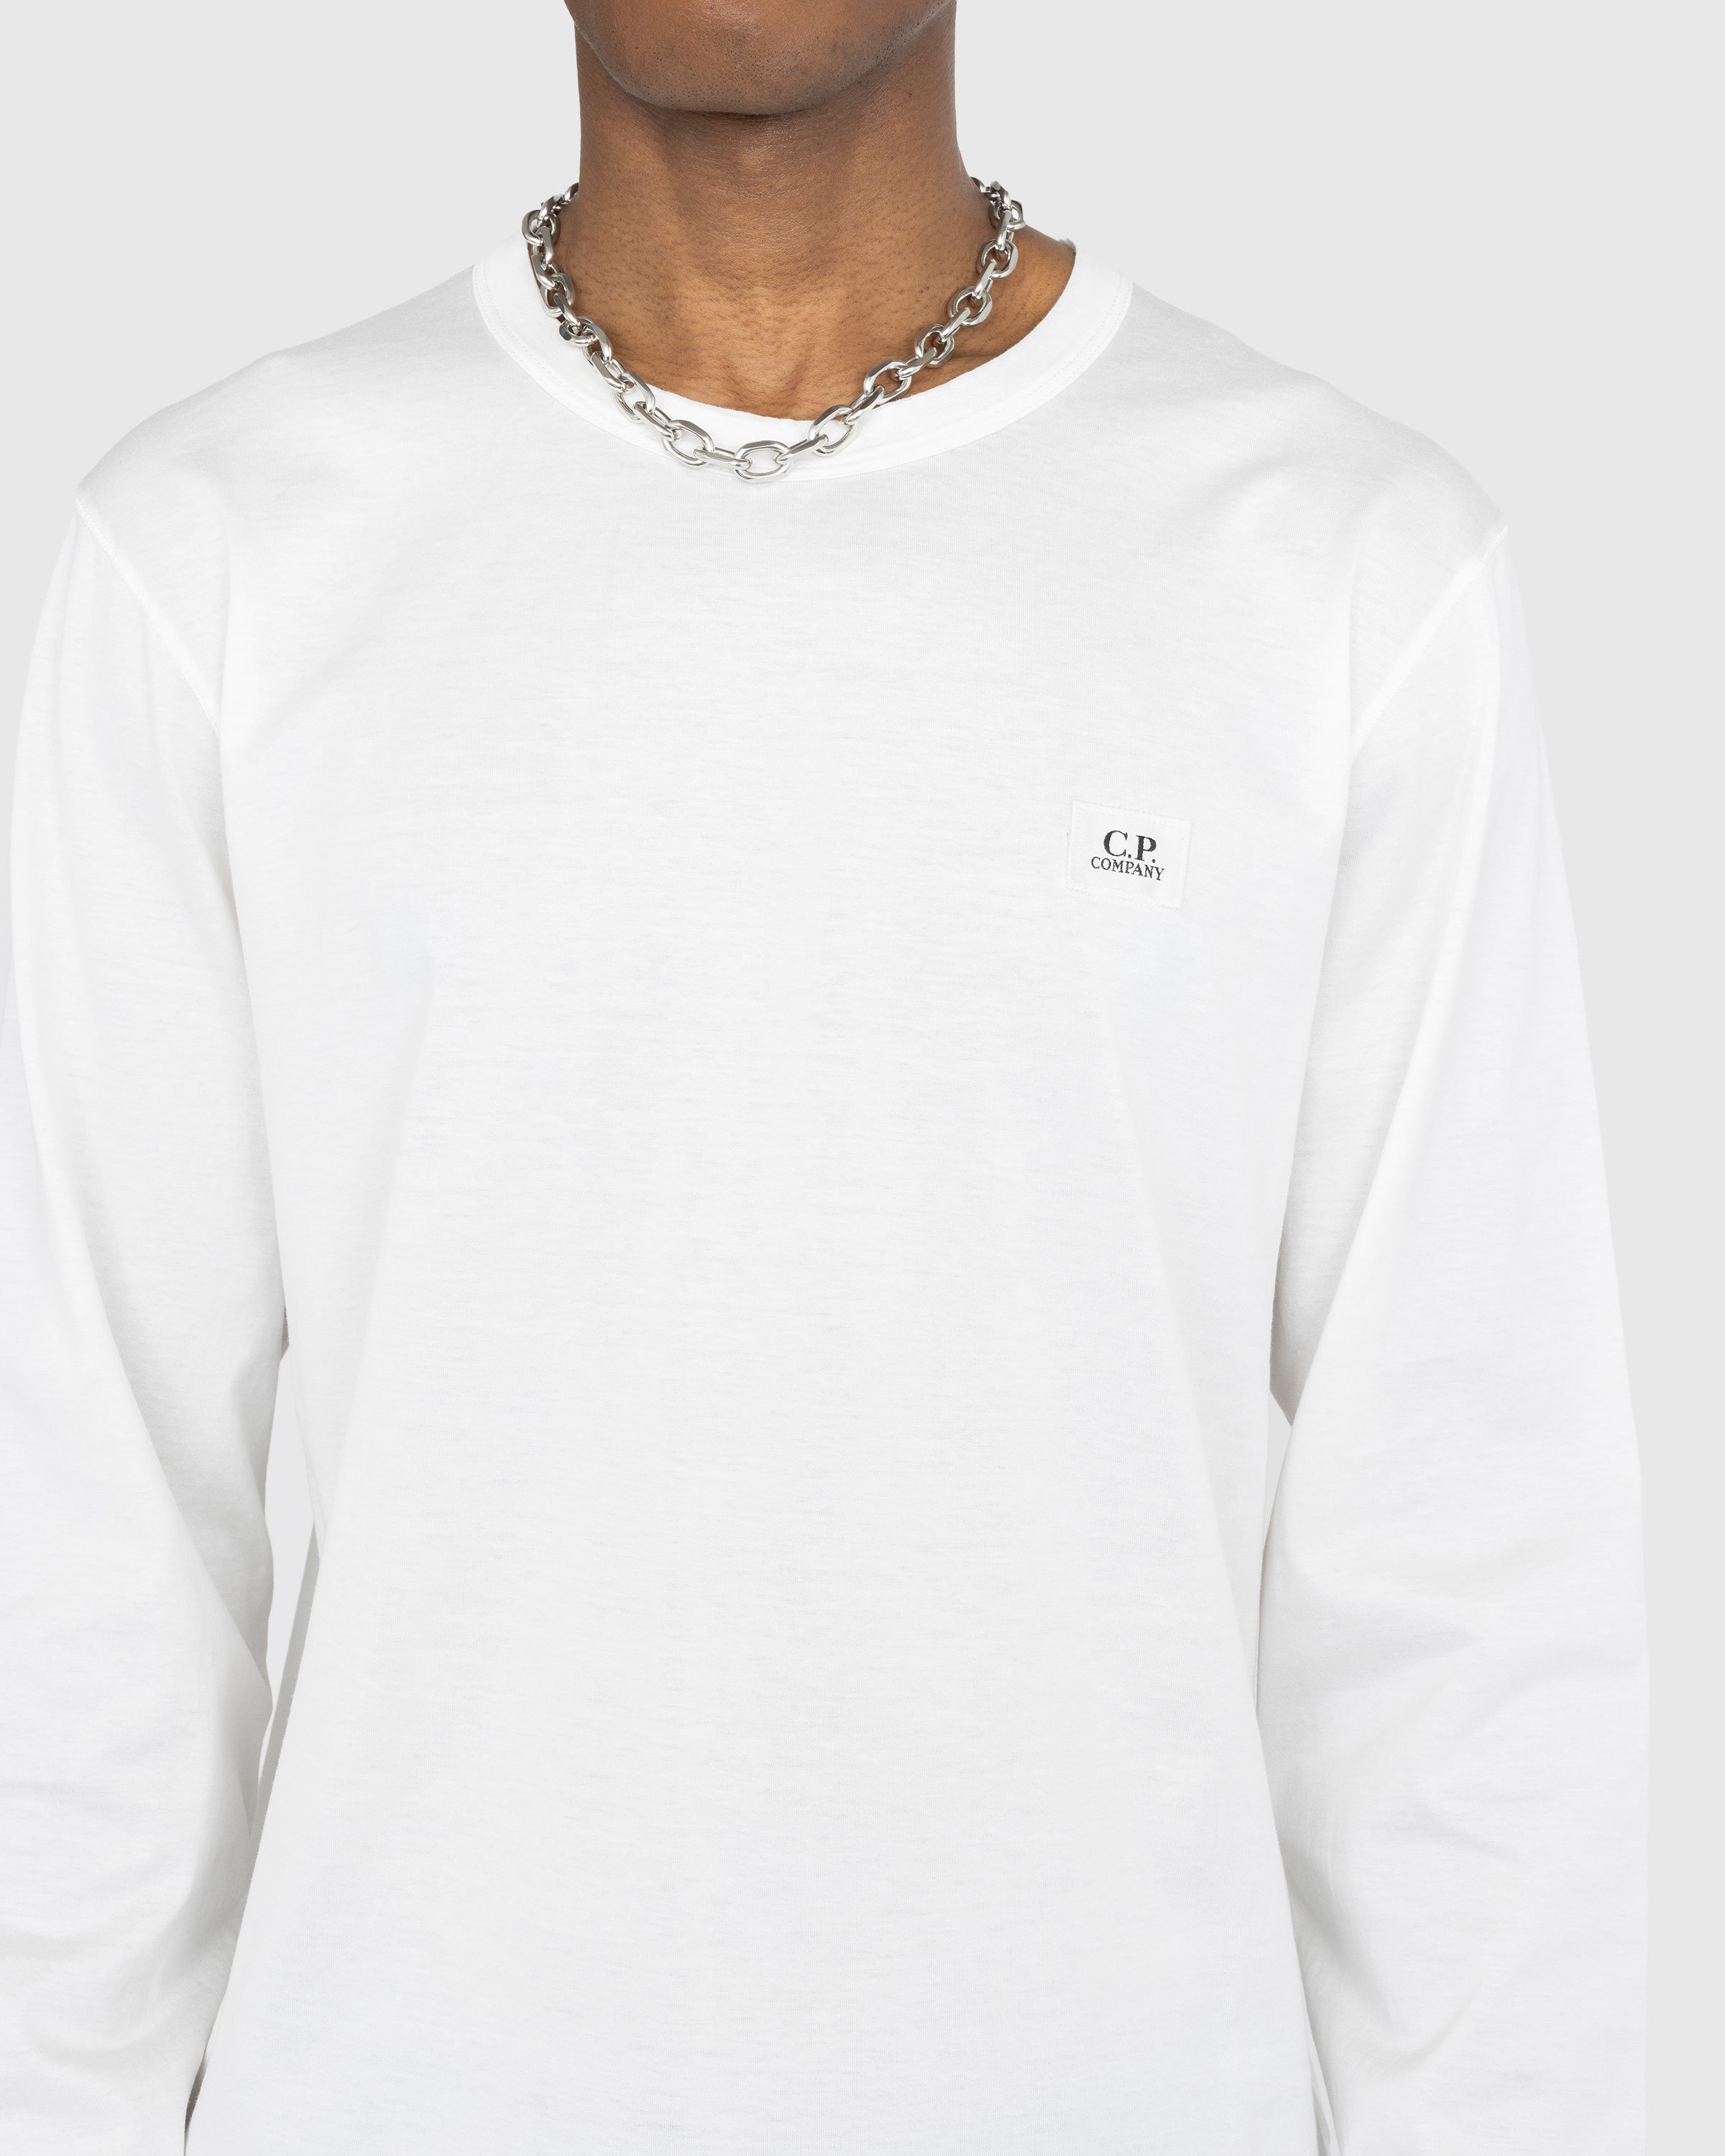 C.P. Company - T-Shirts - Long Sleeve - Clothing - White - Image 4